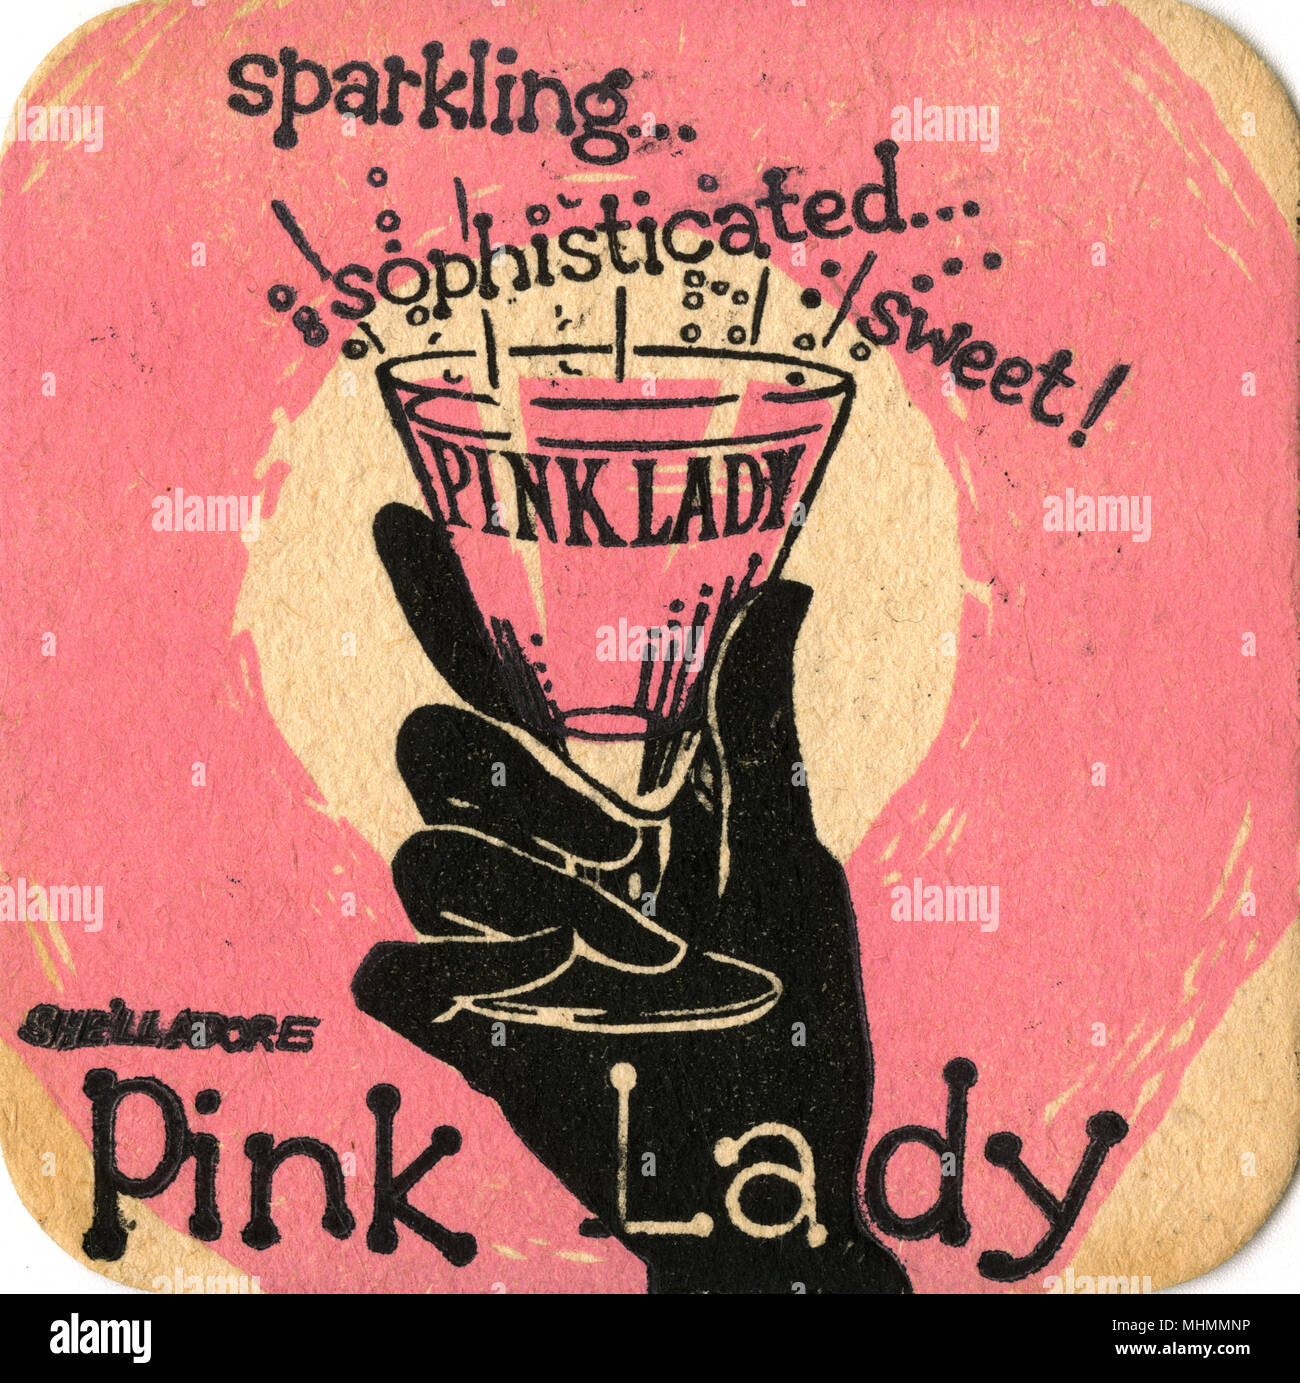 Bebidas posavasos de Pink Lady ofreciendo una elegante mano enguantada sosteniendo un vaso de la bebida espumante. Fecha: c.1960 Foto de stock